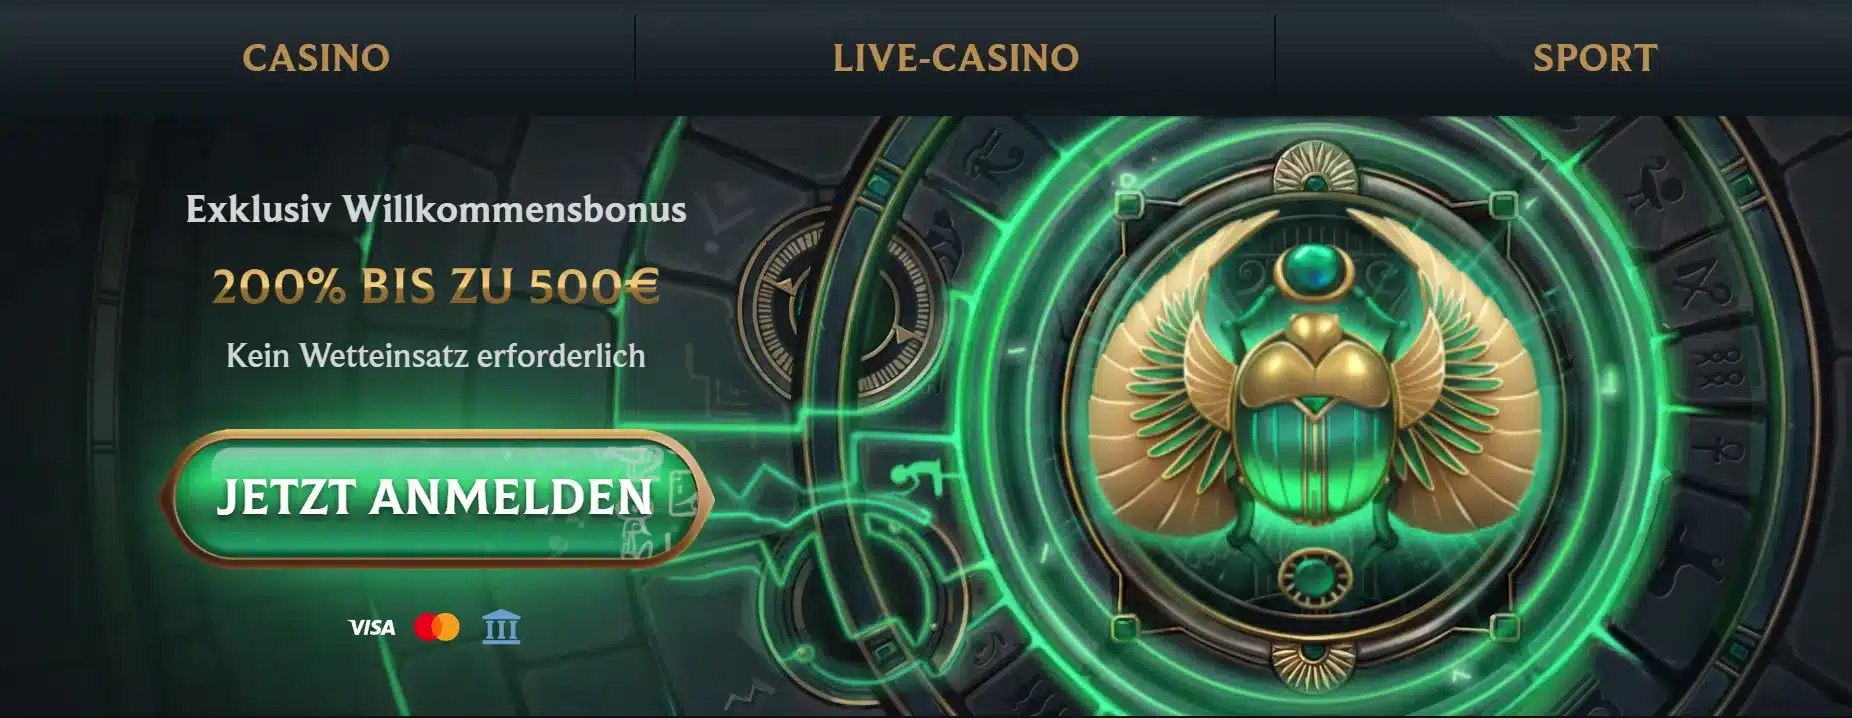 Casino with 200% Percent Bonus